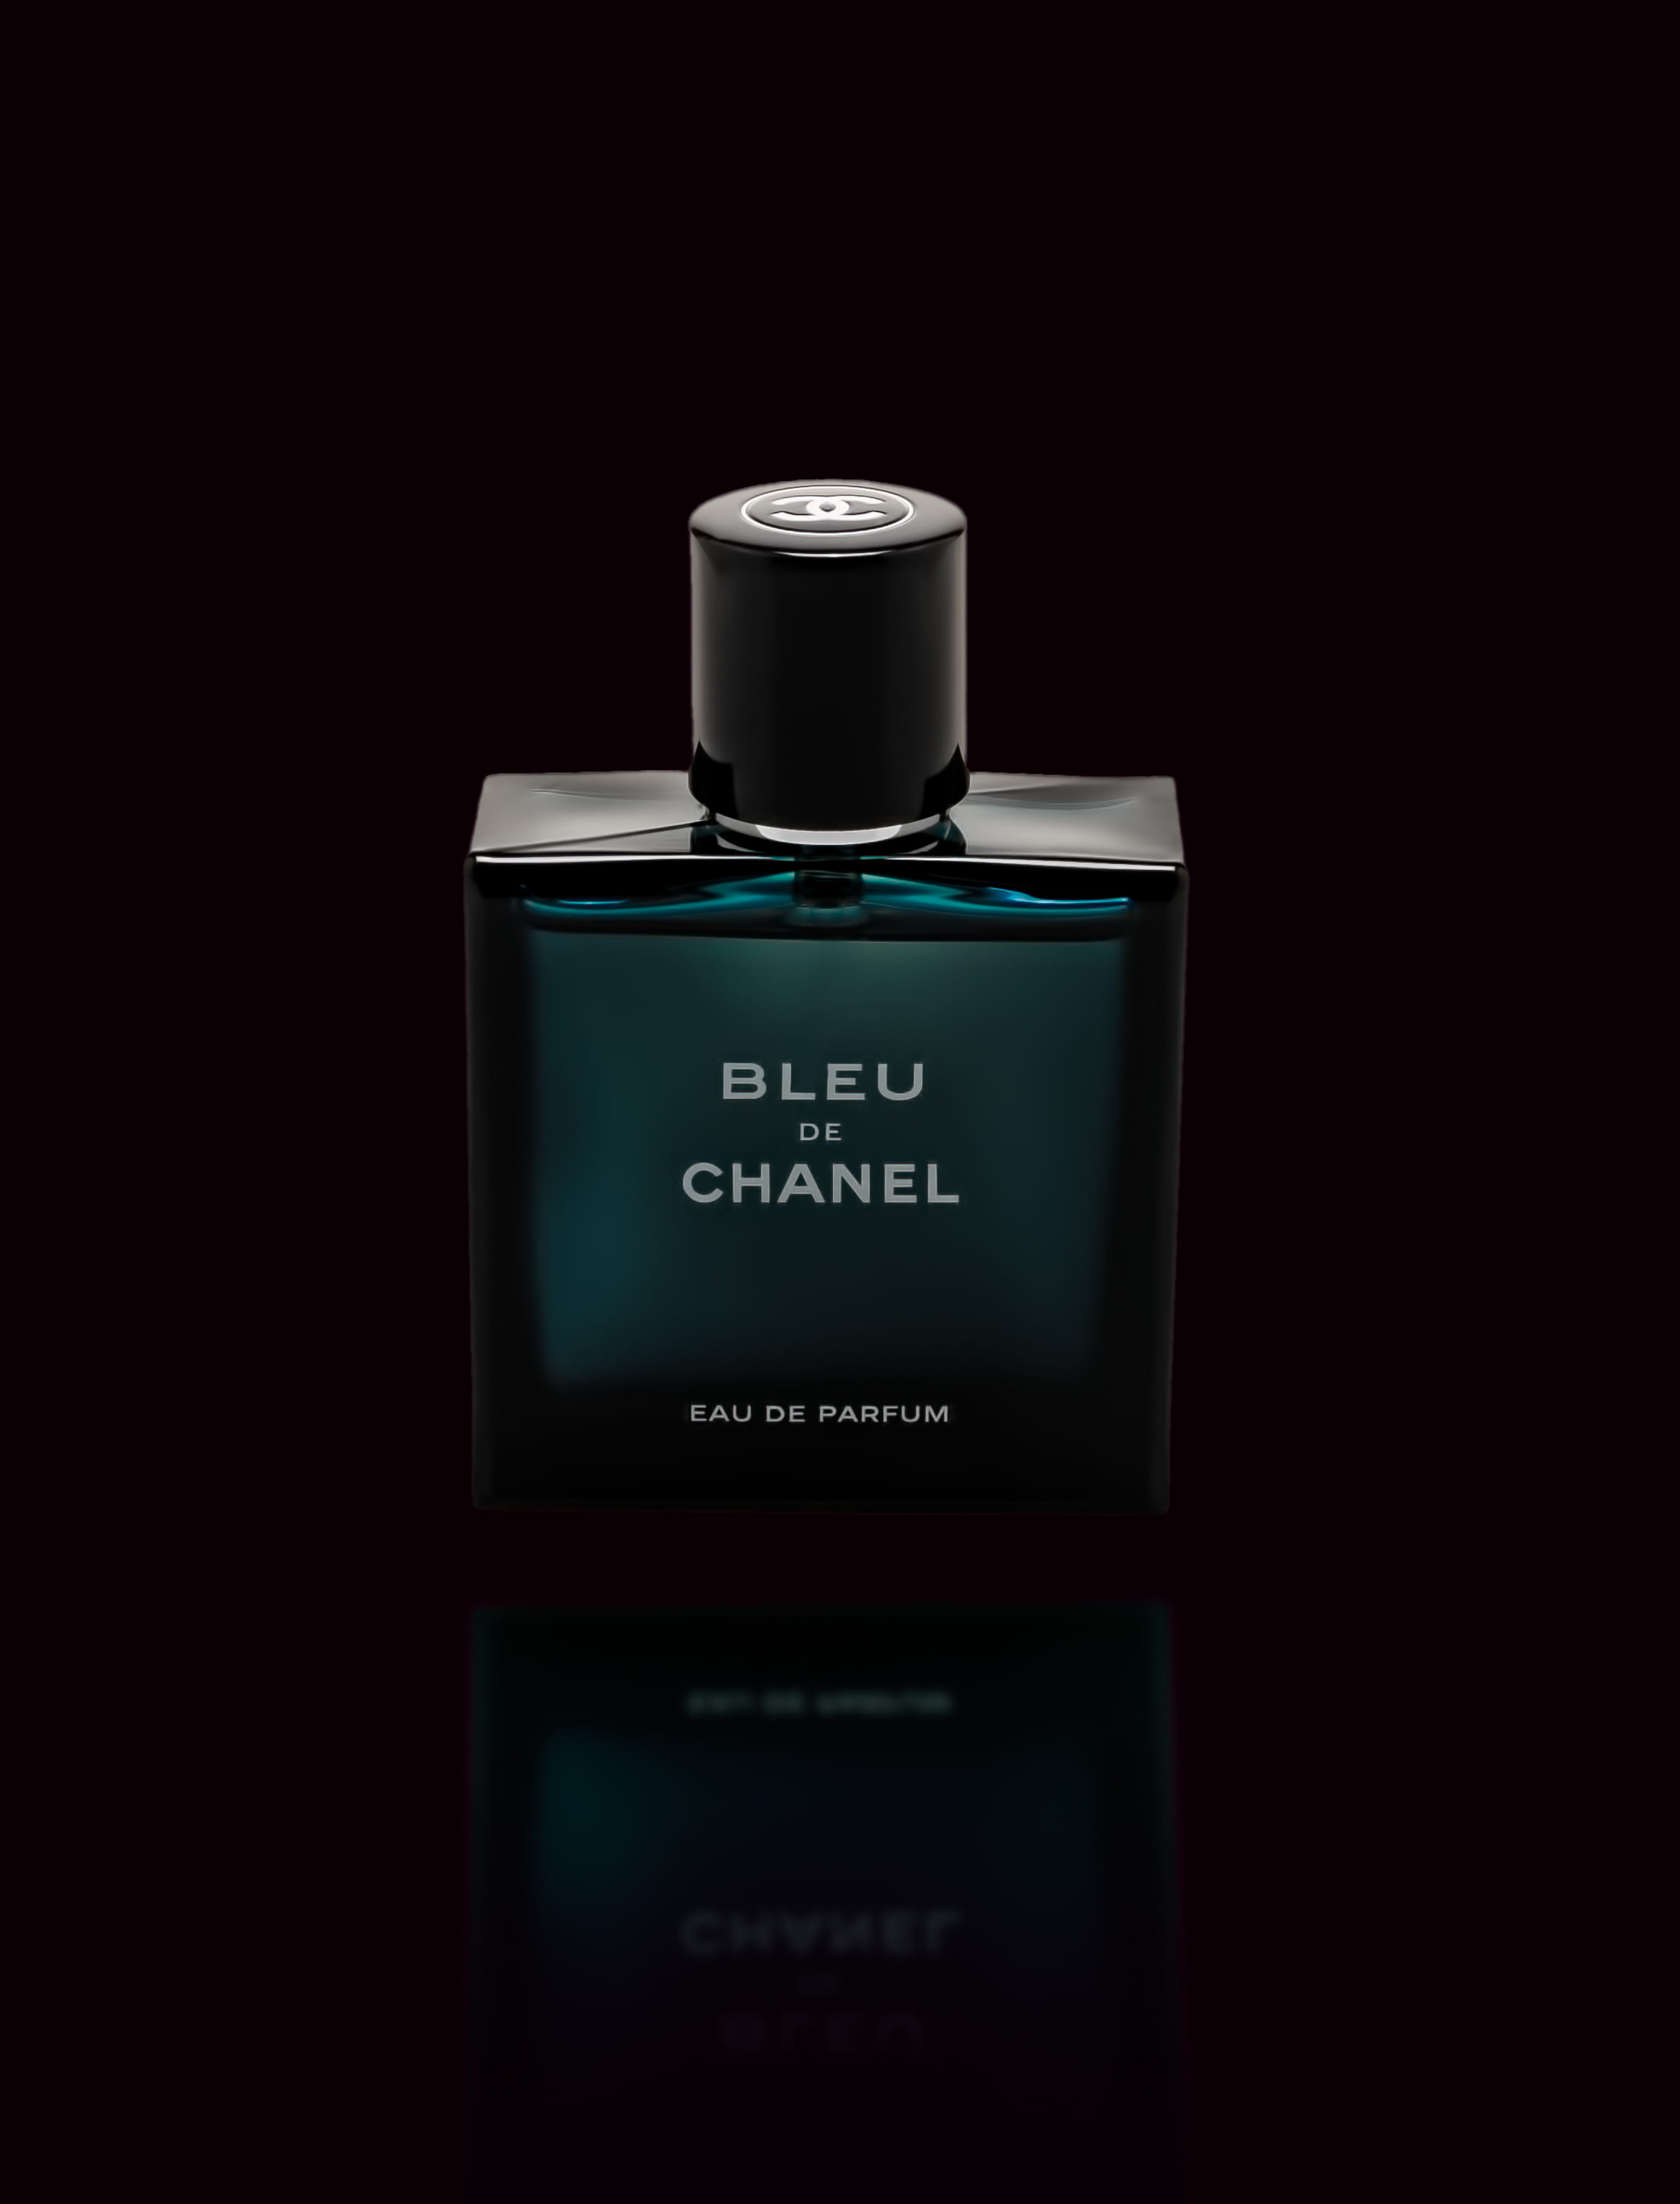 Bleu de Chanel eau de parfum bottle, indoors, studio shot, close-up